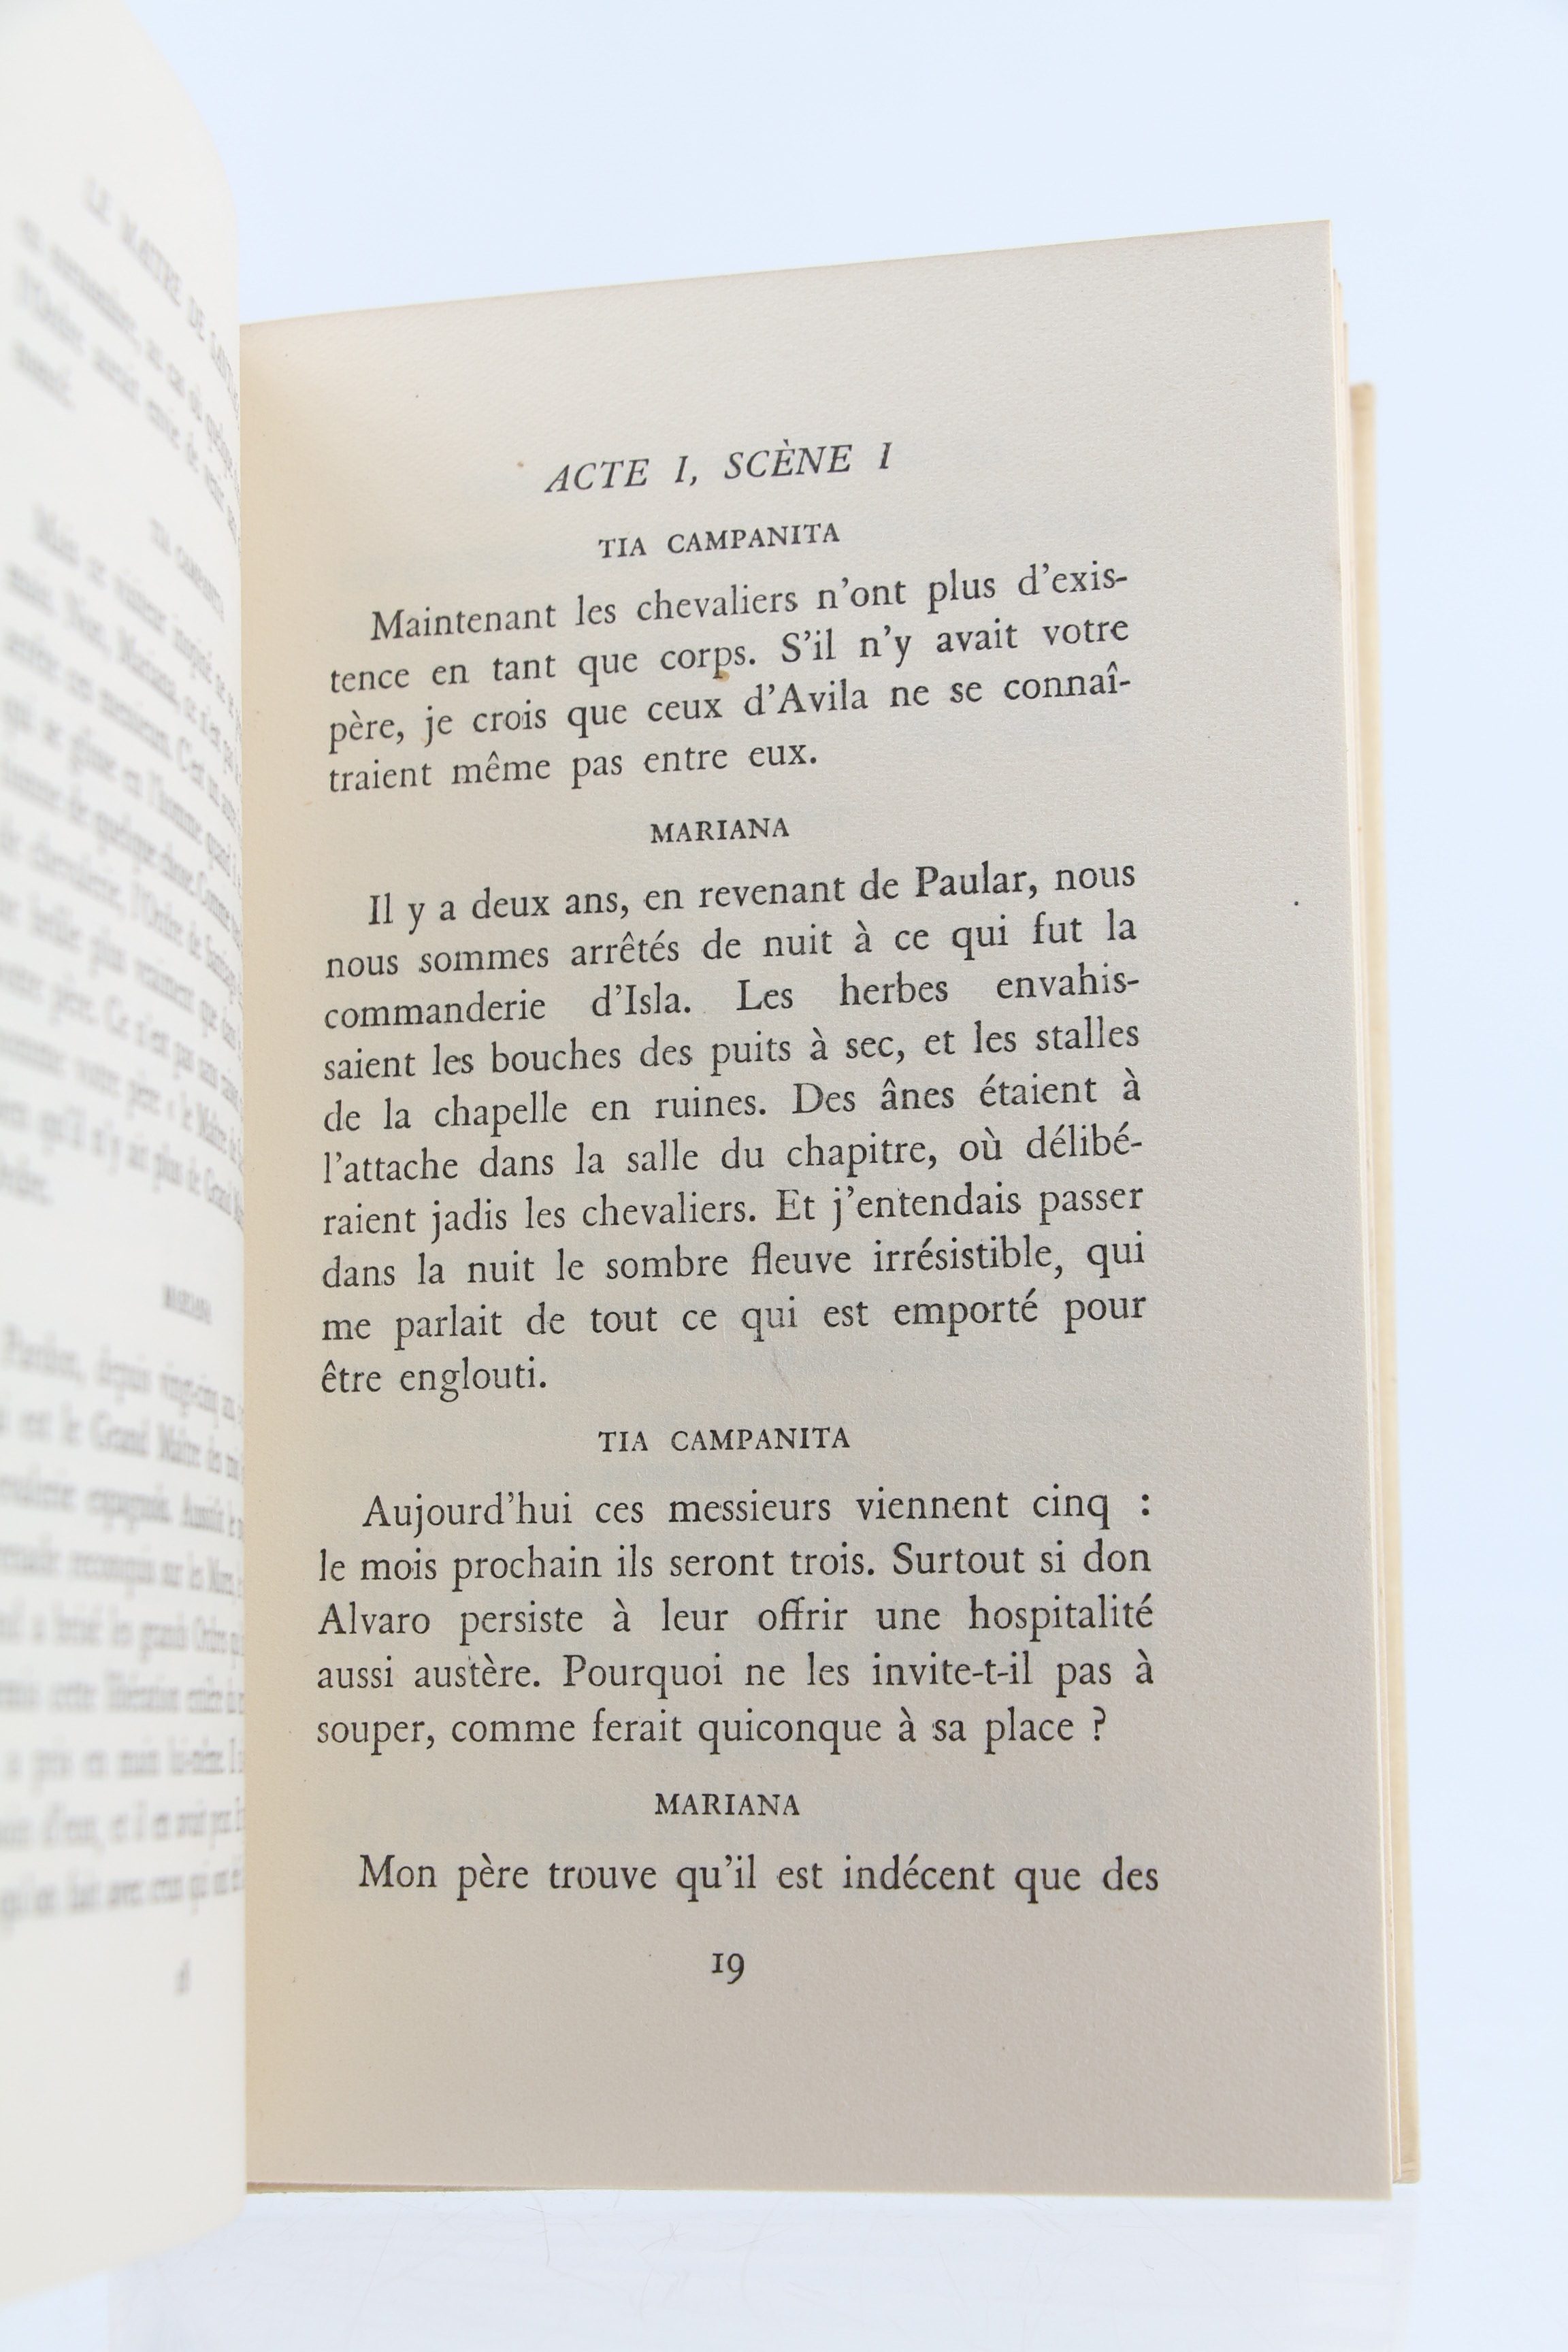 Le Maître de Santiago by MONTHERLANT Henri de: couverture souple (1947 ...